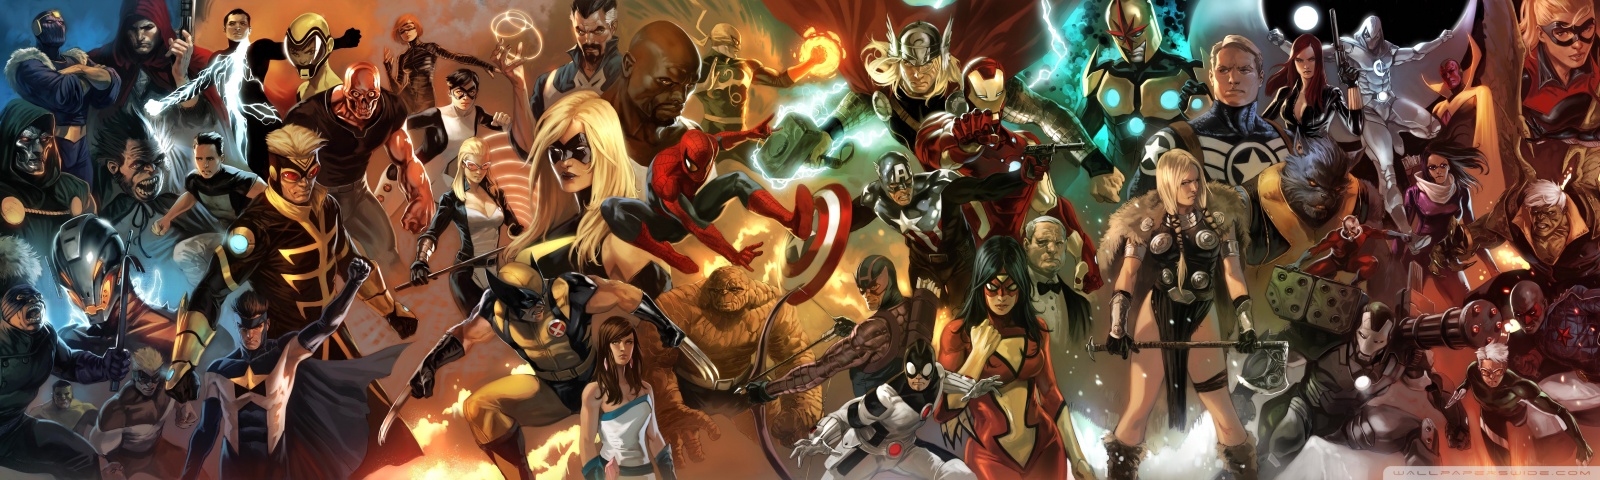 Wallpapers Hd Comics Marvel<br/>